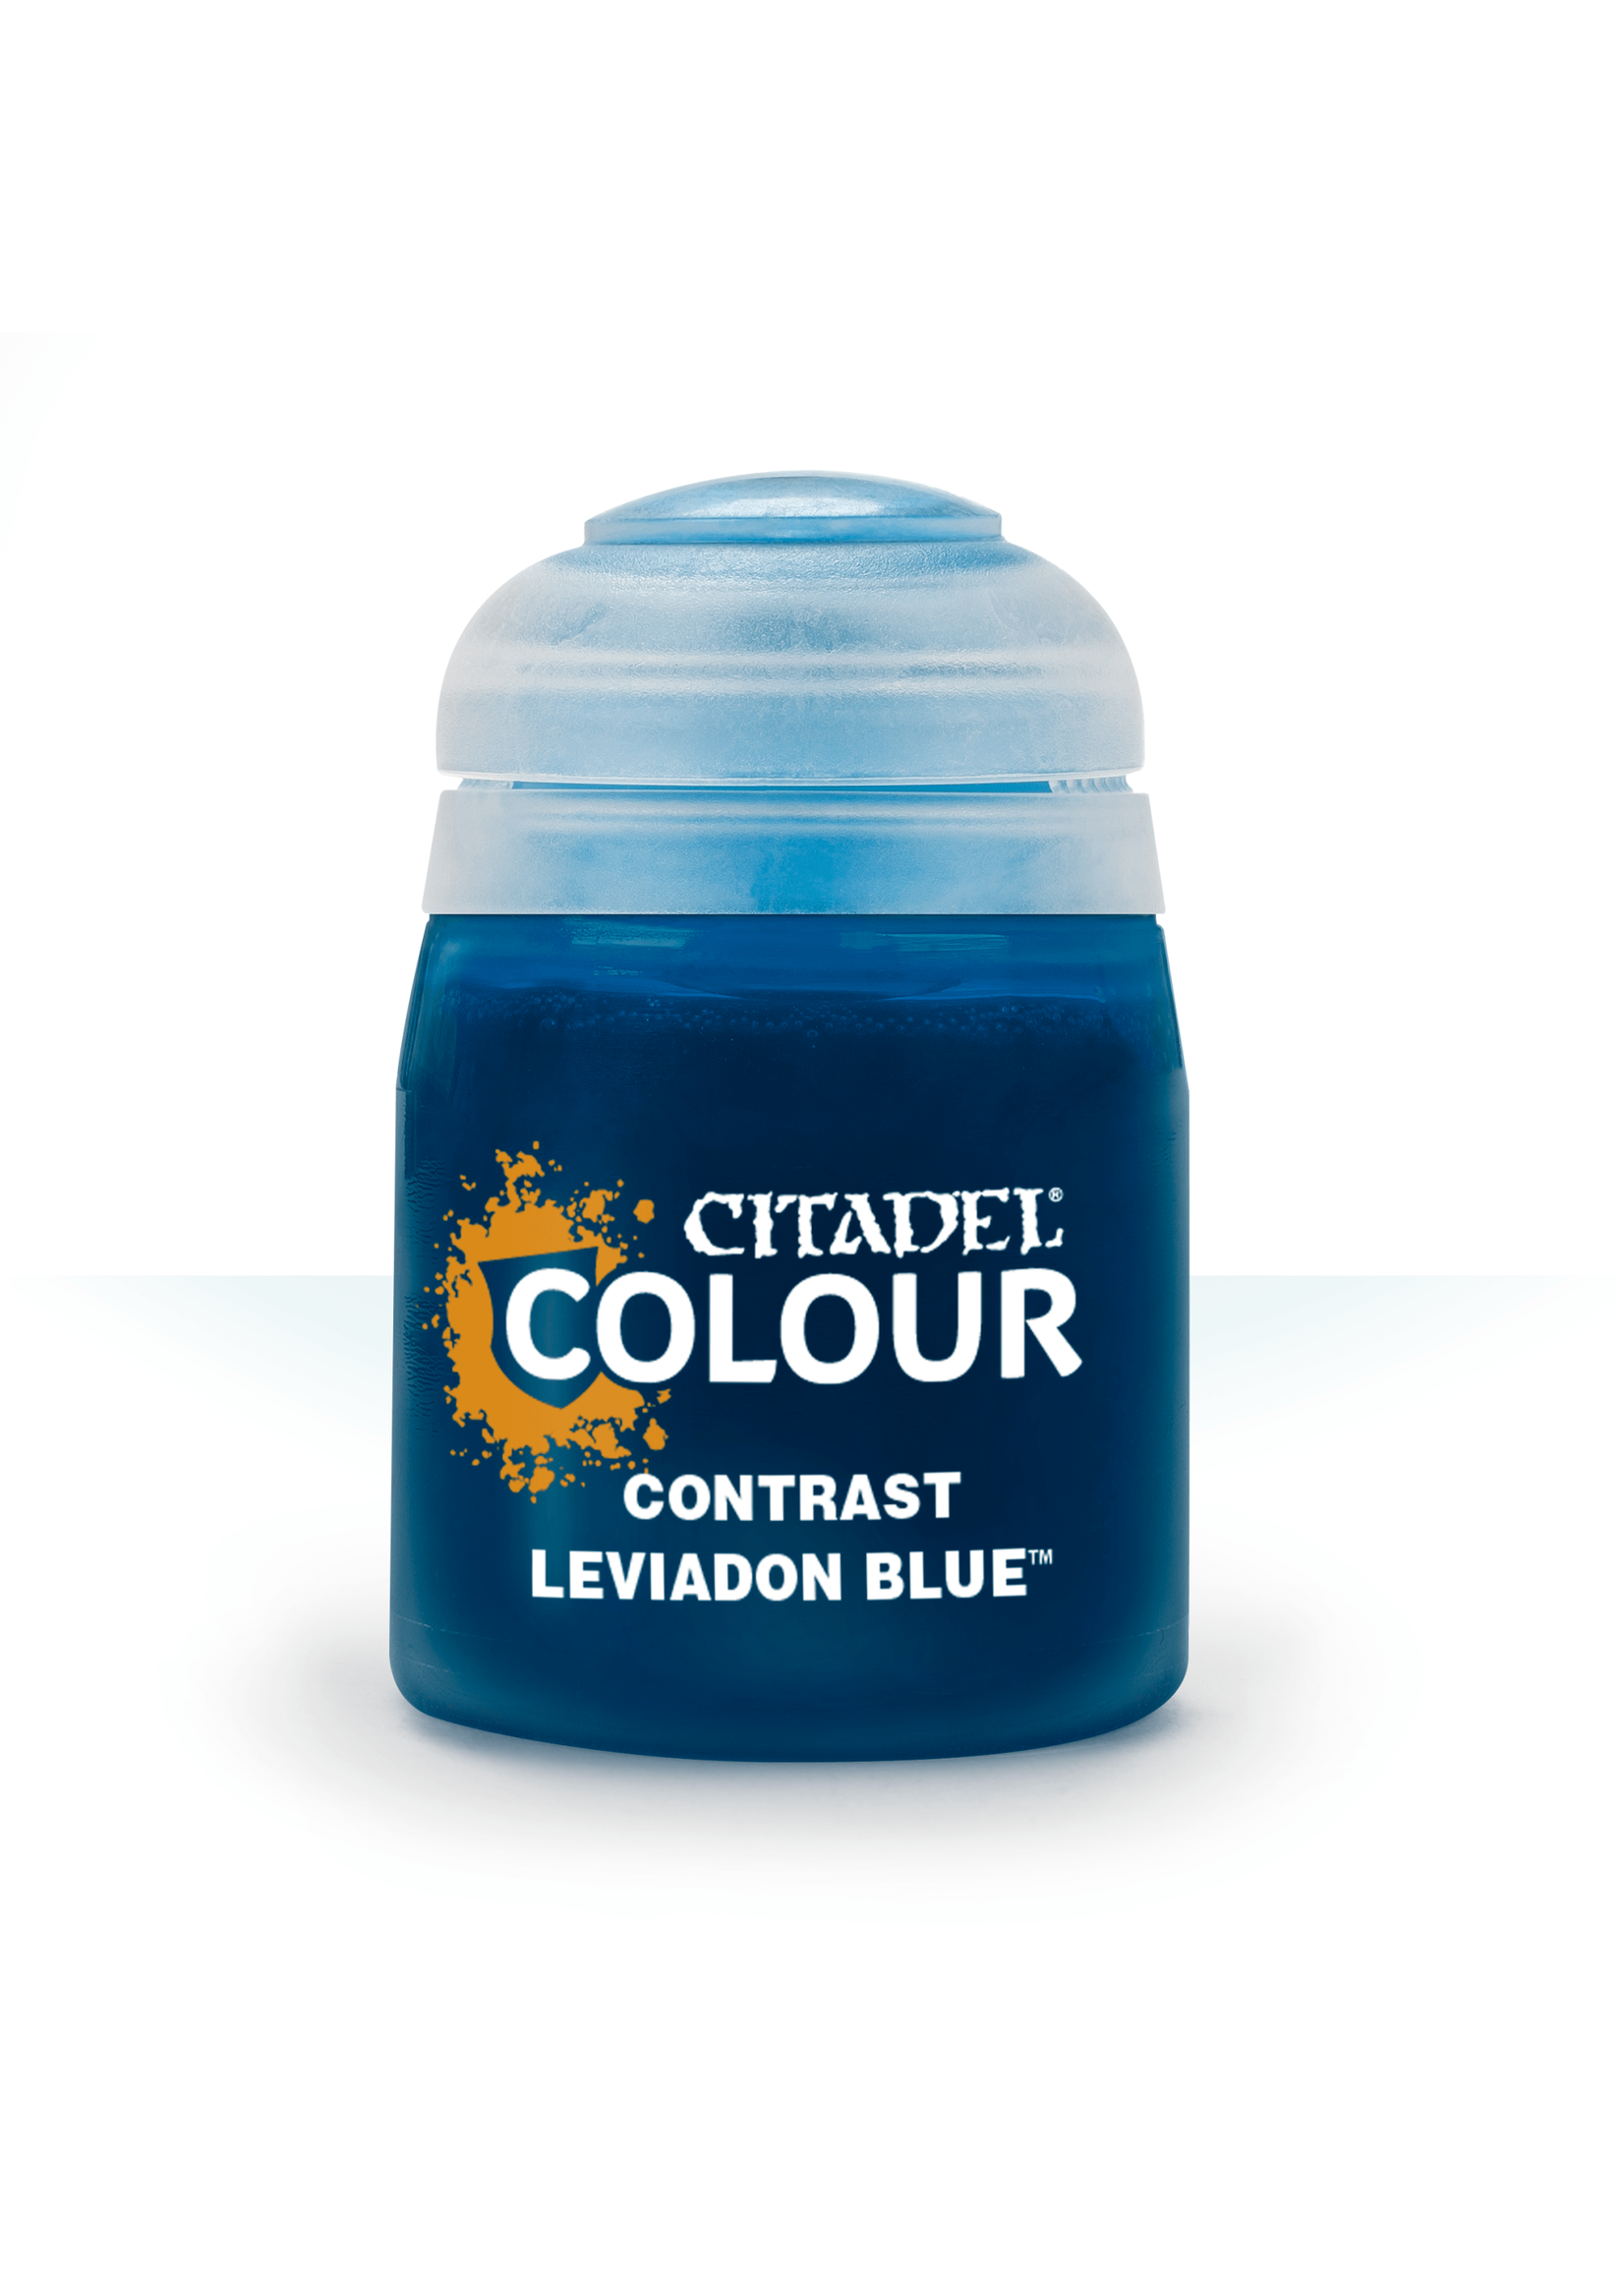 Citadel Contrast Leviadon Blue